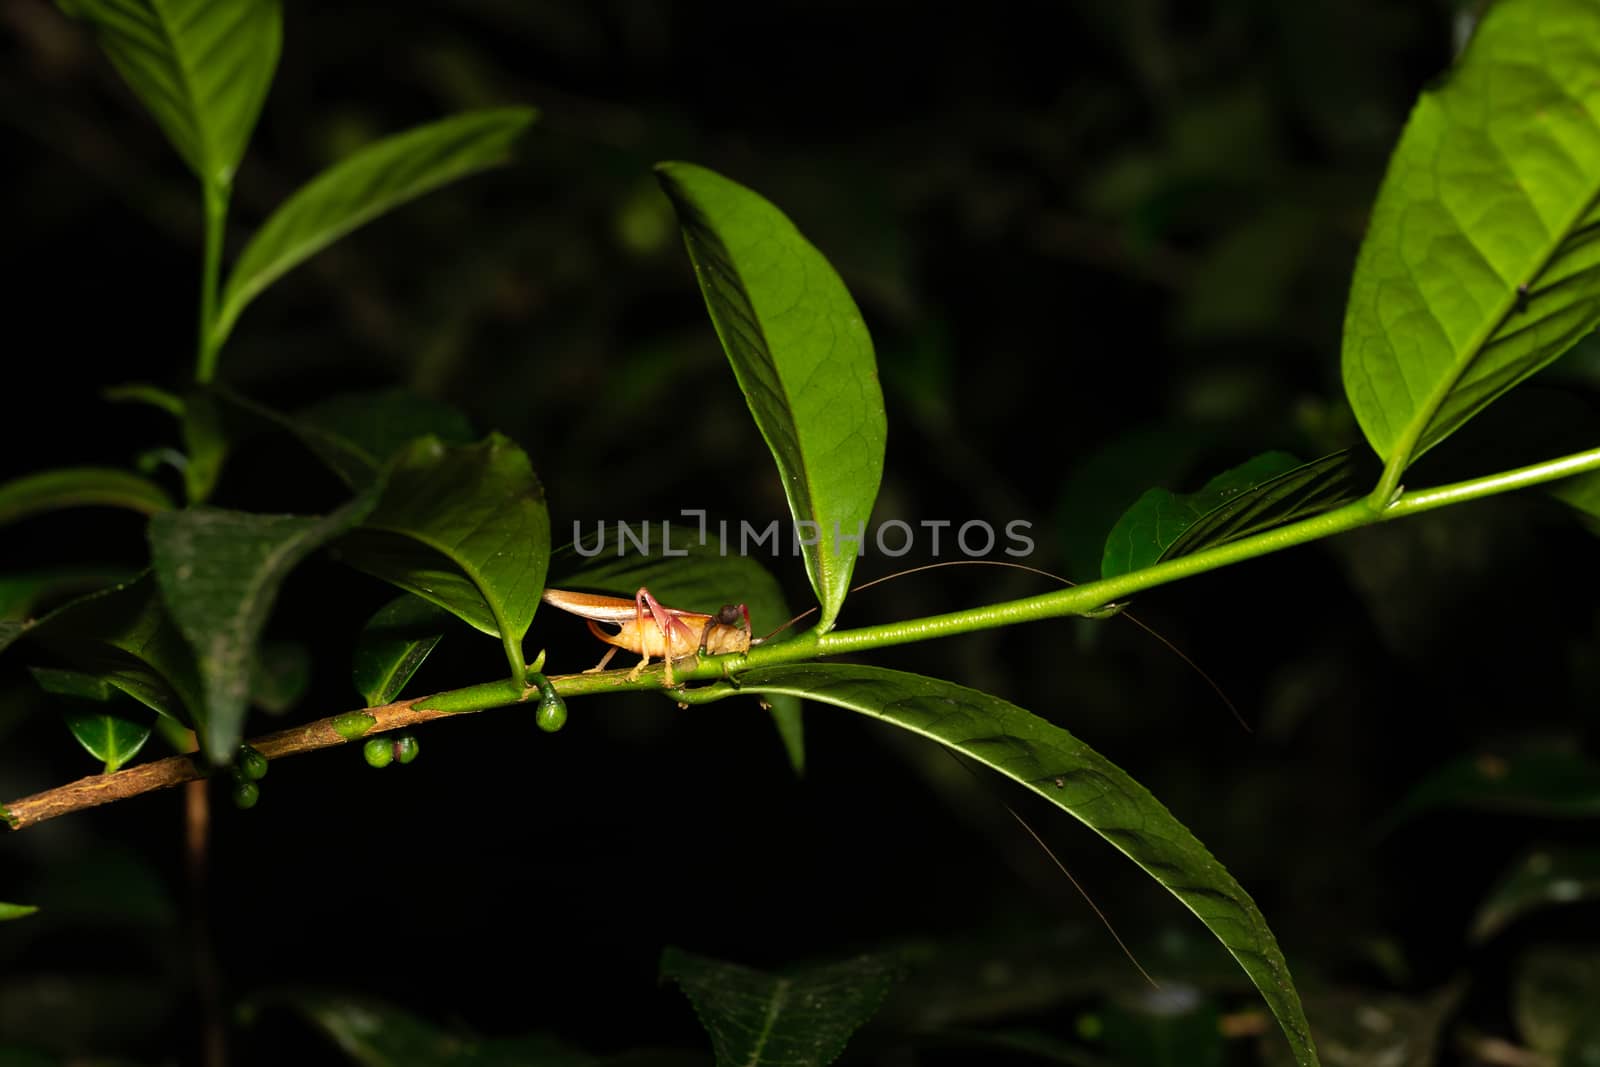 One grasshopper on a leaf of a bush